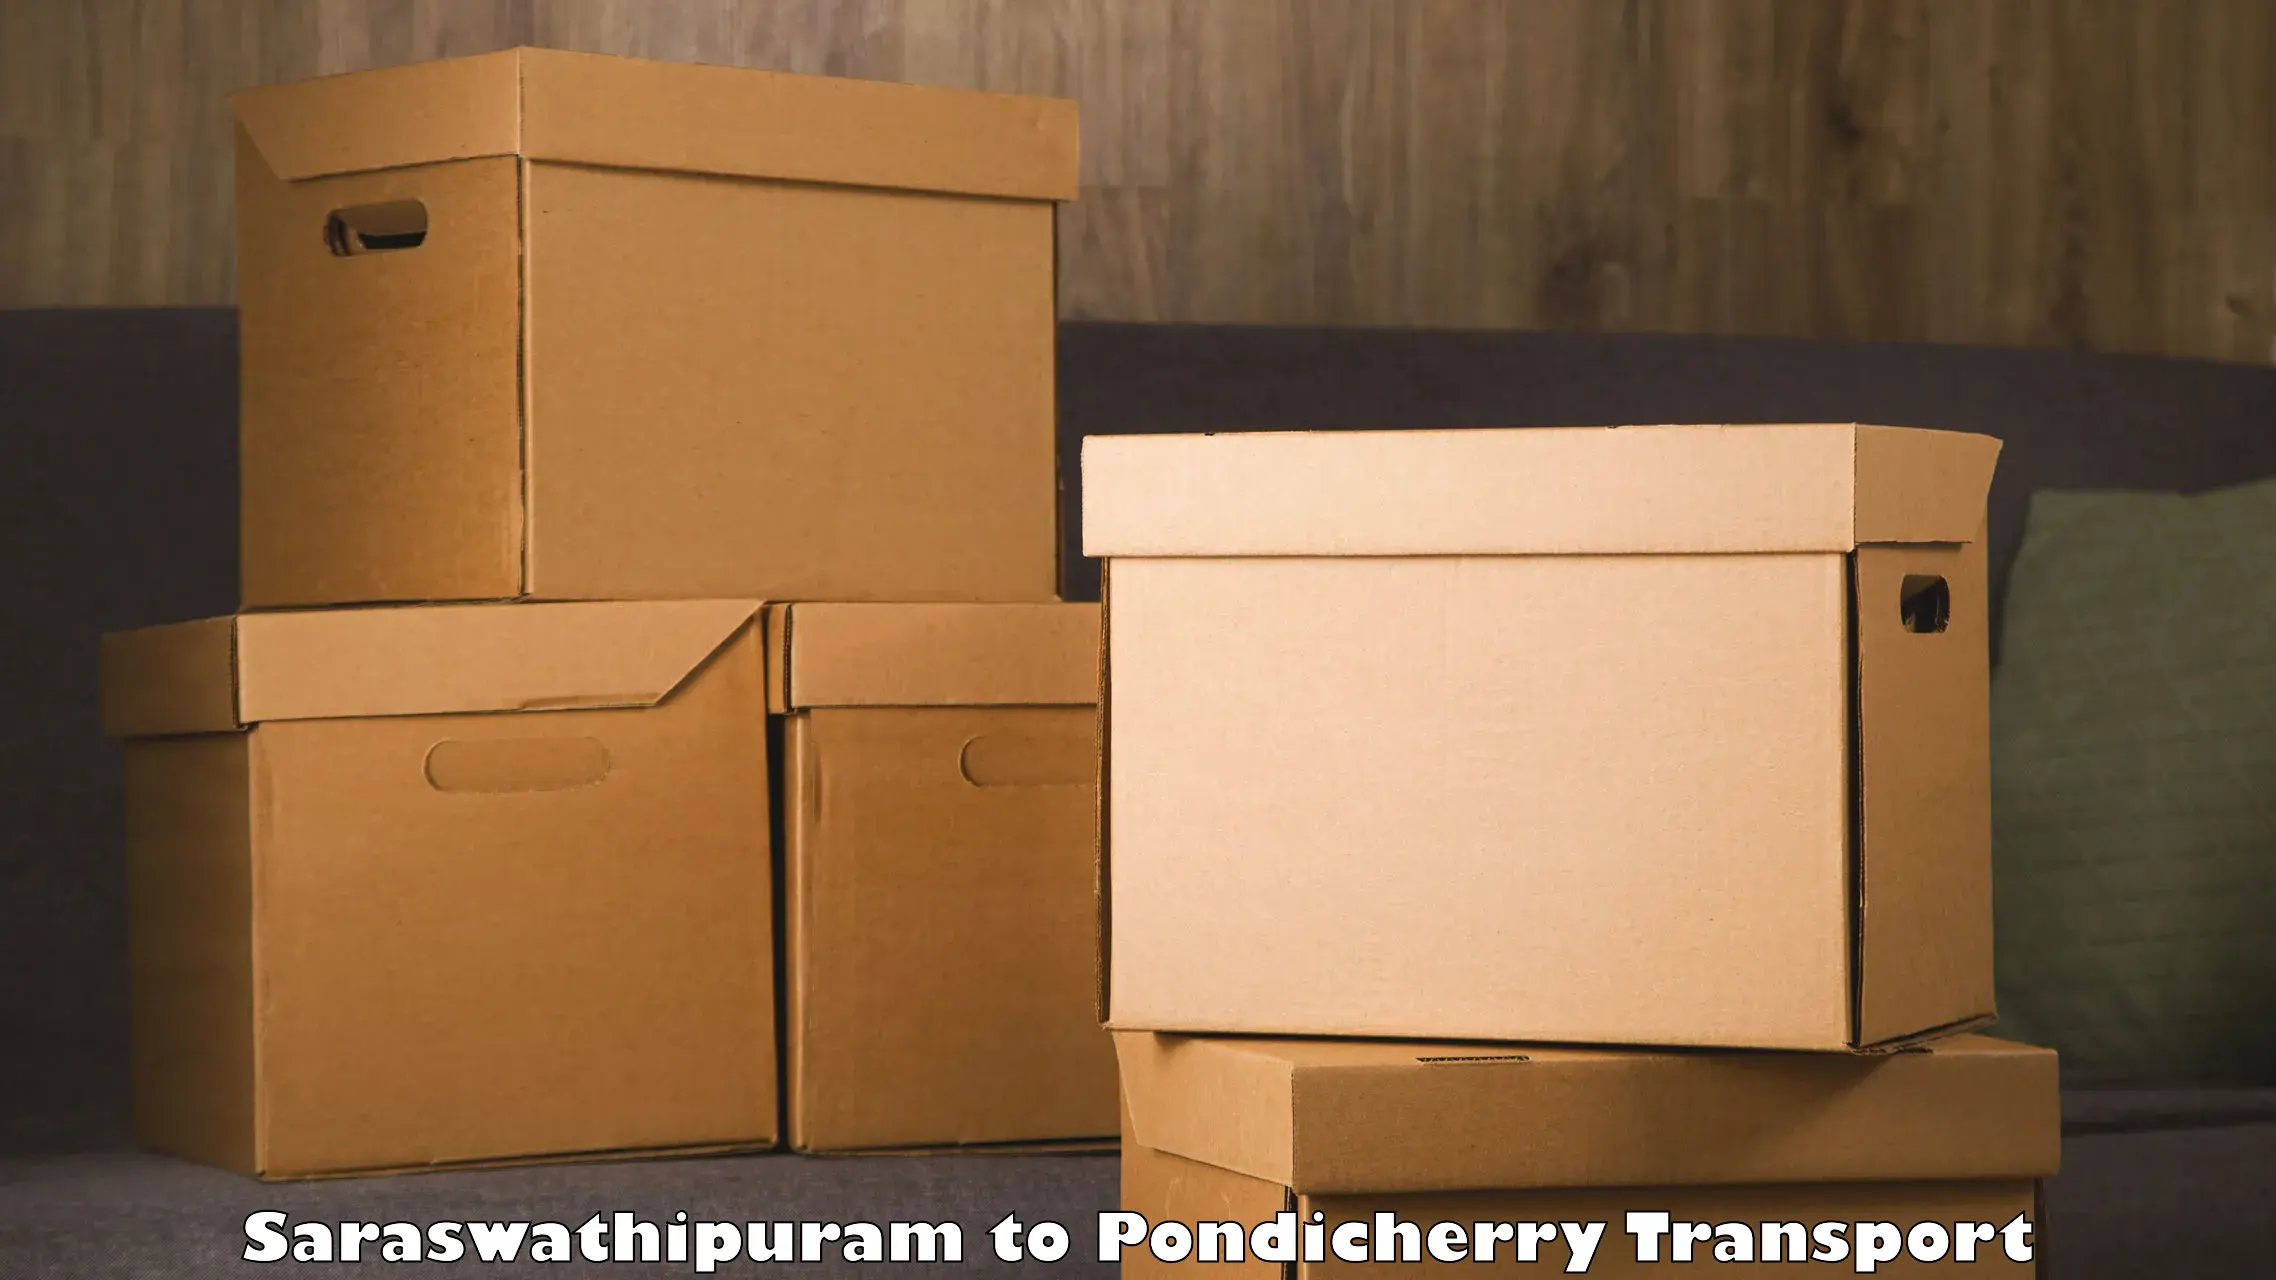 Pick up transport service Saraswathipuram to Pondicherry University